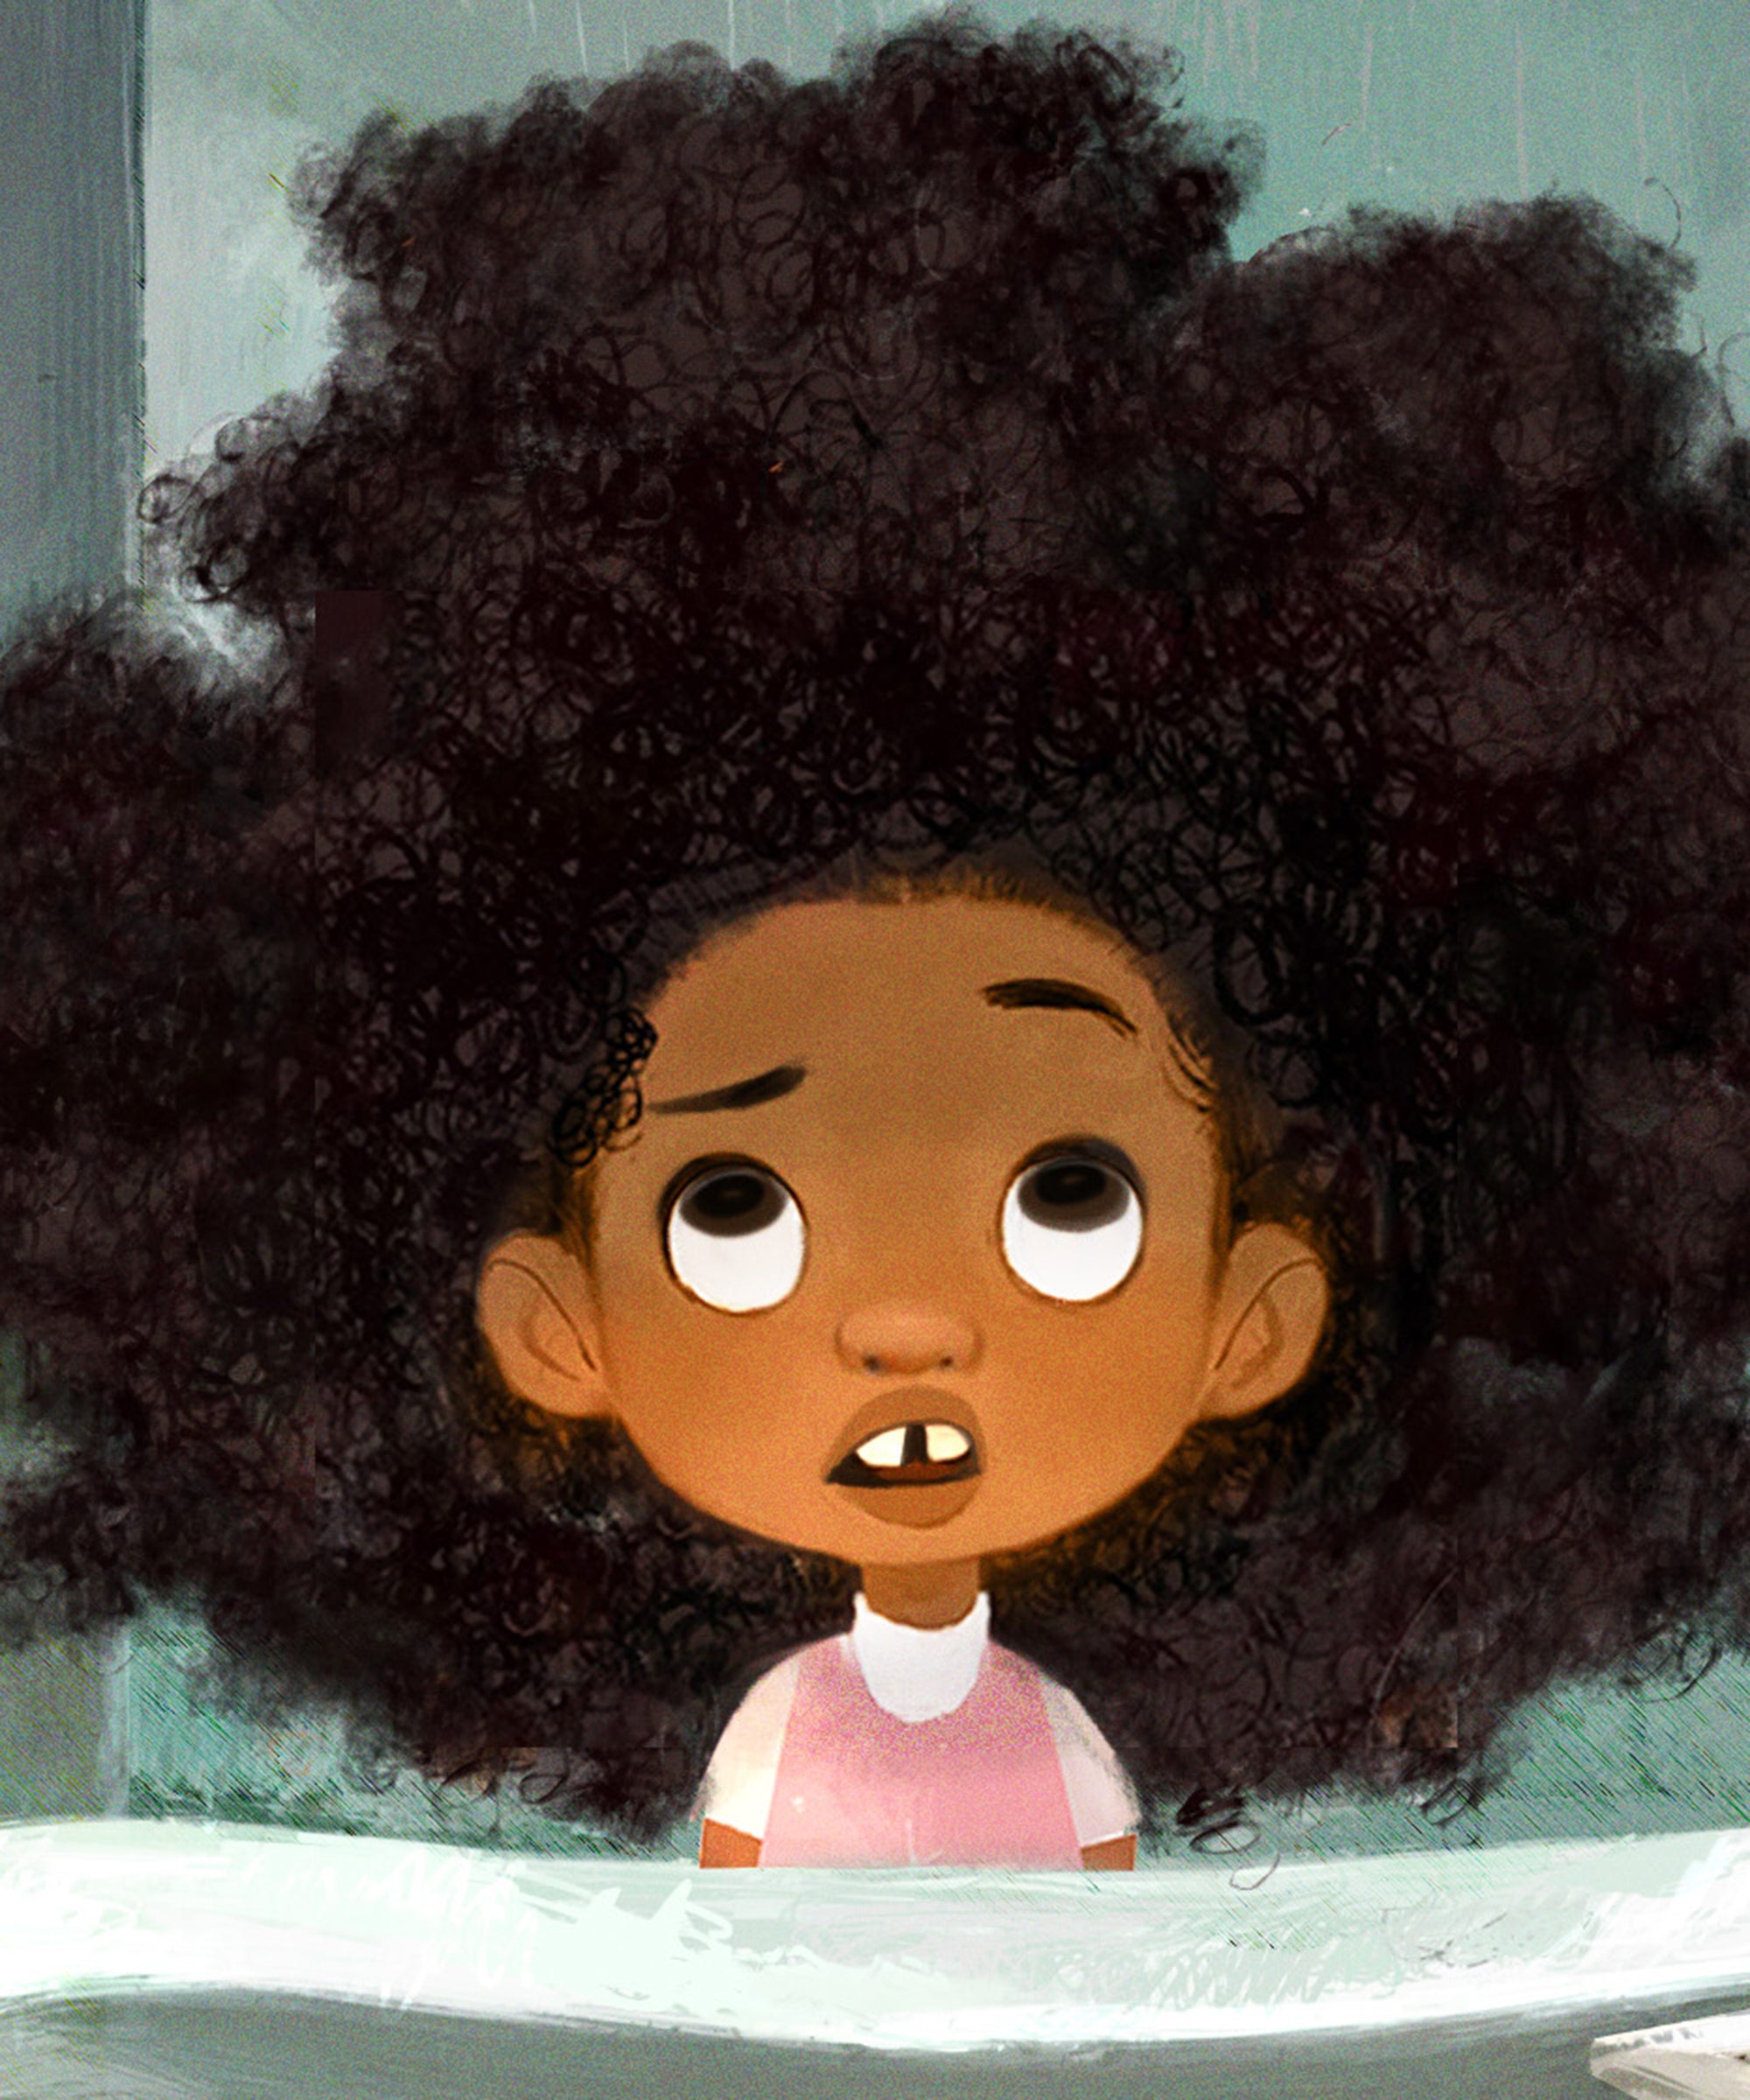 Hair Love Wins The Oscar For Animated Short Film 2020